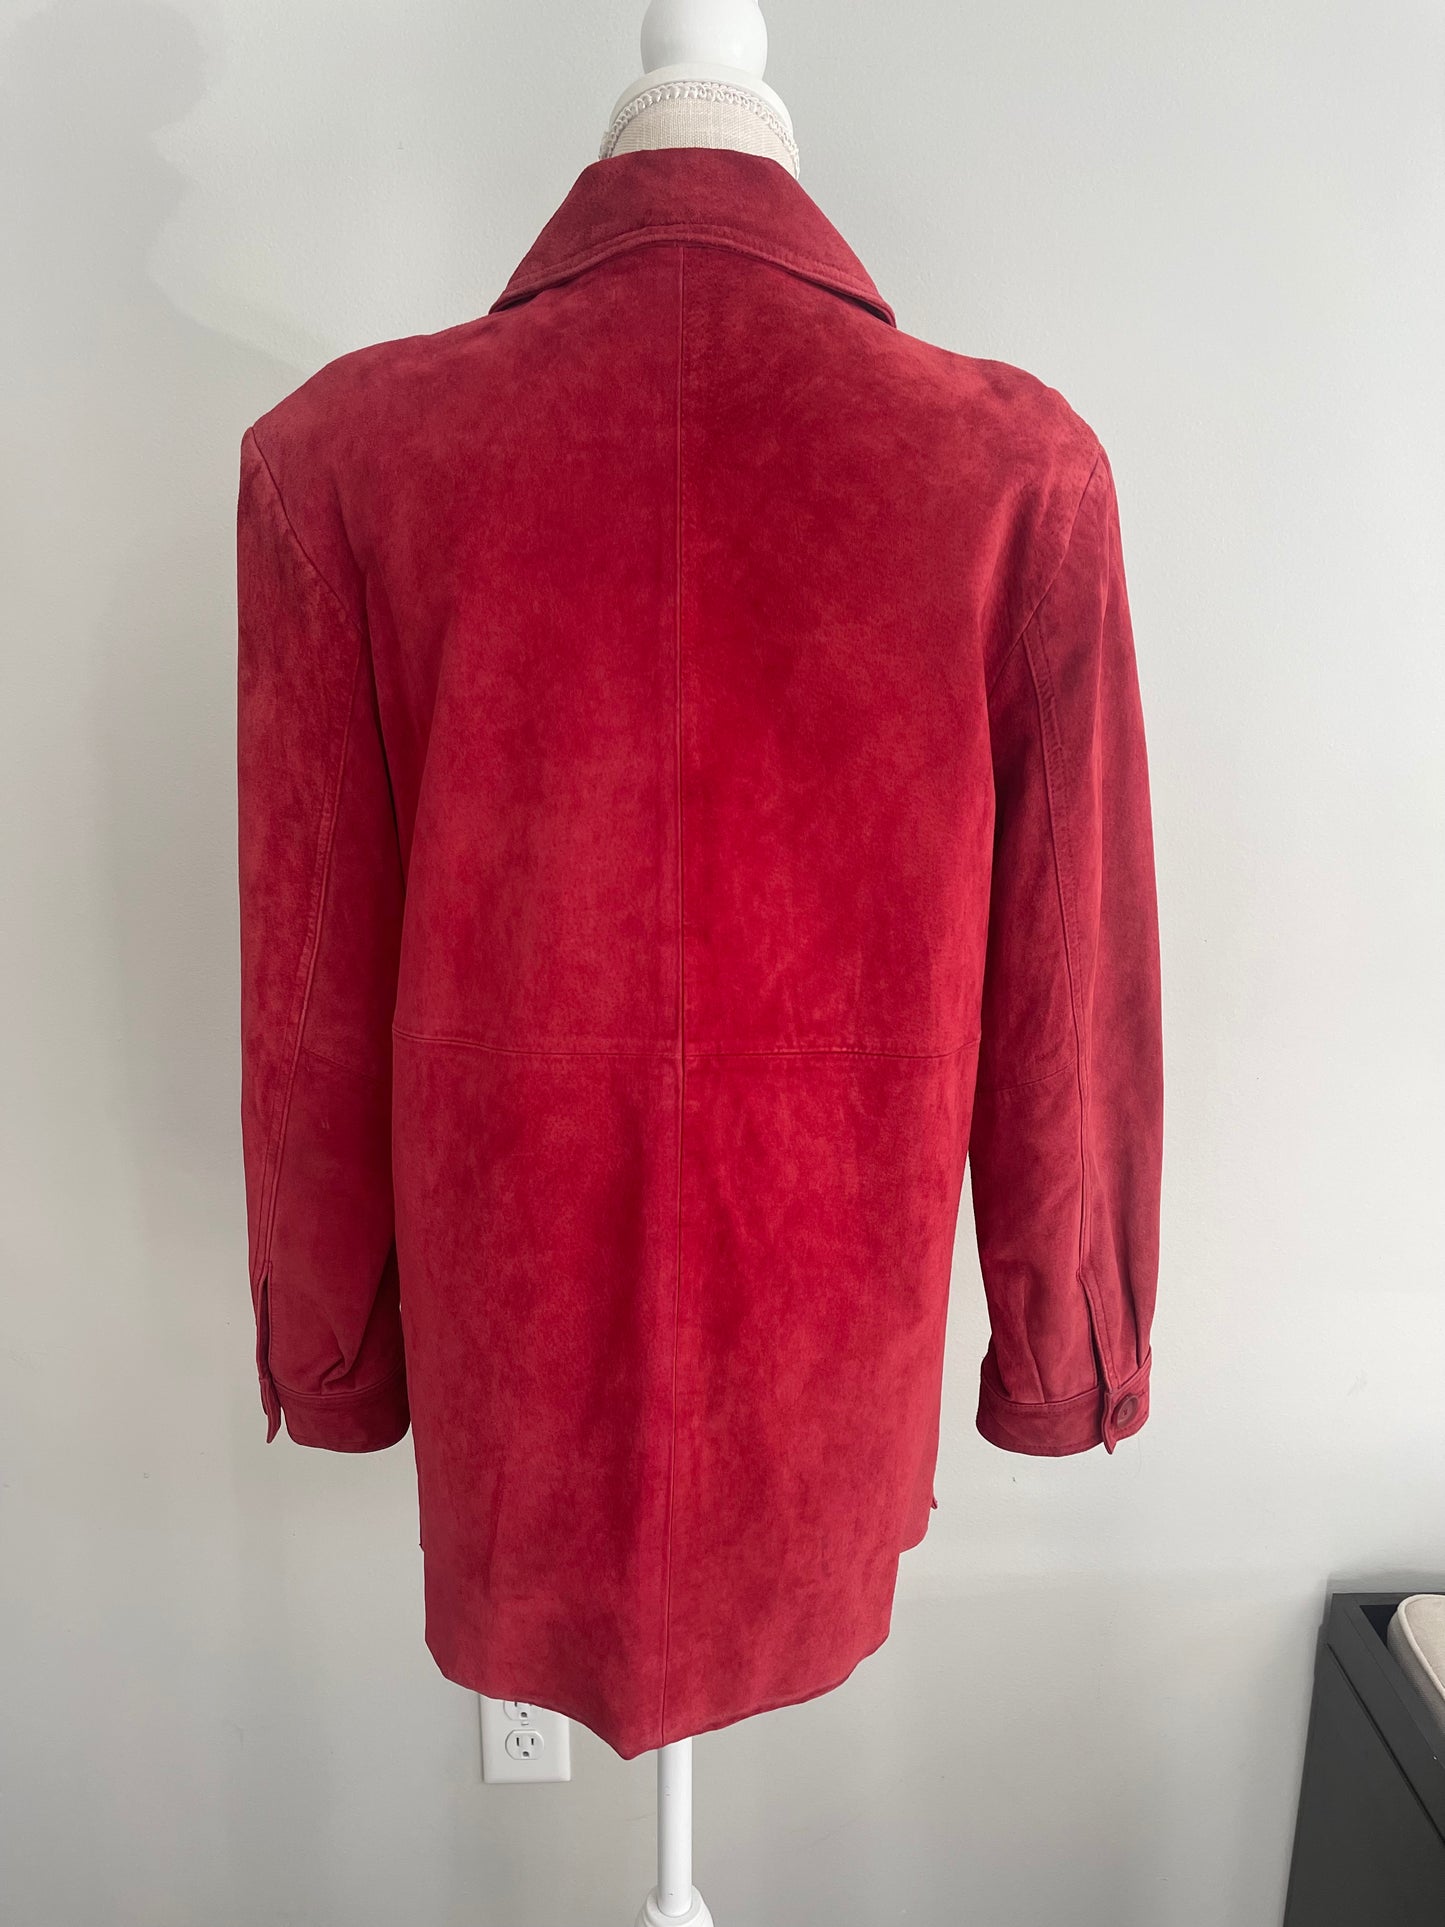 Vintage Cherokee Red Suede Mid-length Jacket